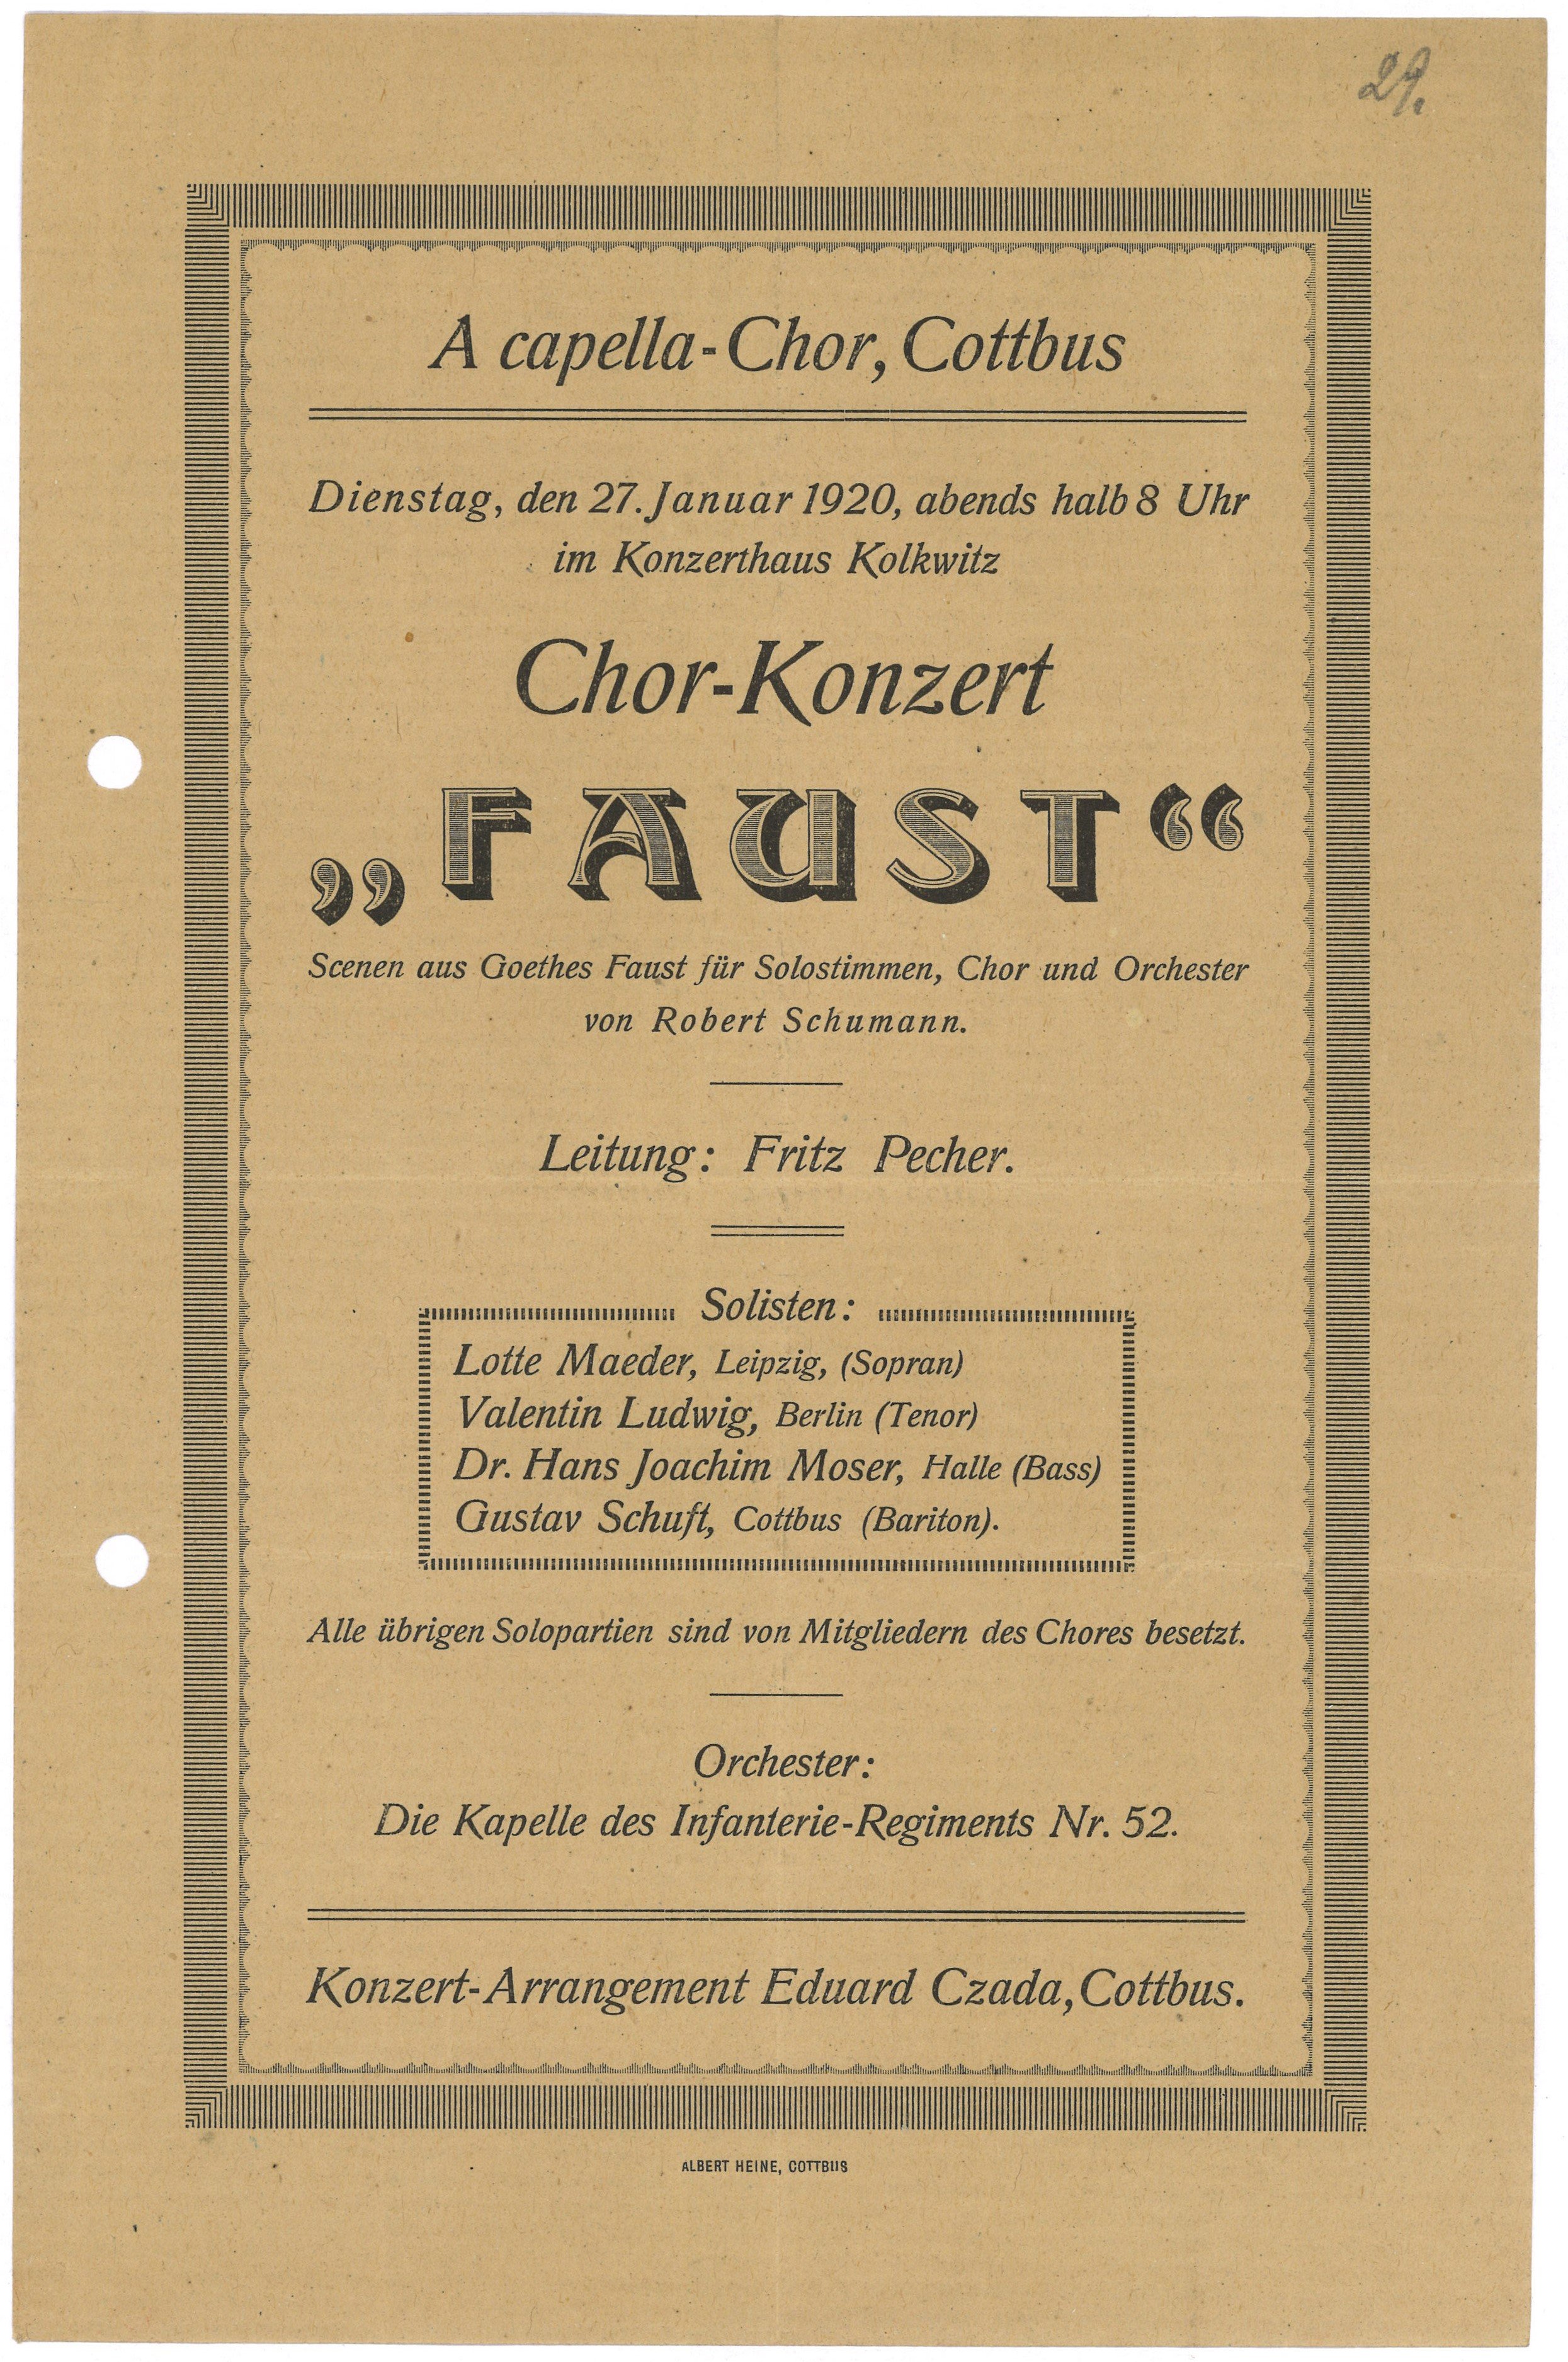 Programm zum Chorkonzert "Faust" des A-capella-Chors in Cottbus am 27. Januar 1920 (Landesgeschichtliche Vereinigung für die Mark Brandenburg e.V., Archiv CC BY)